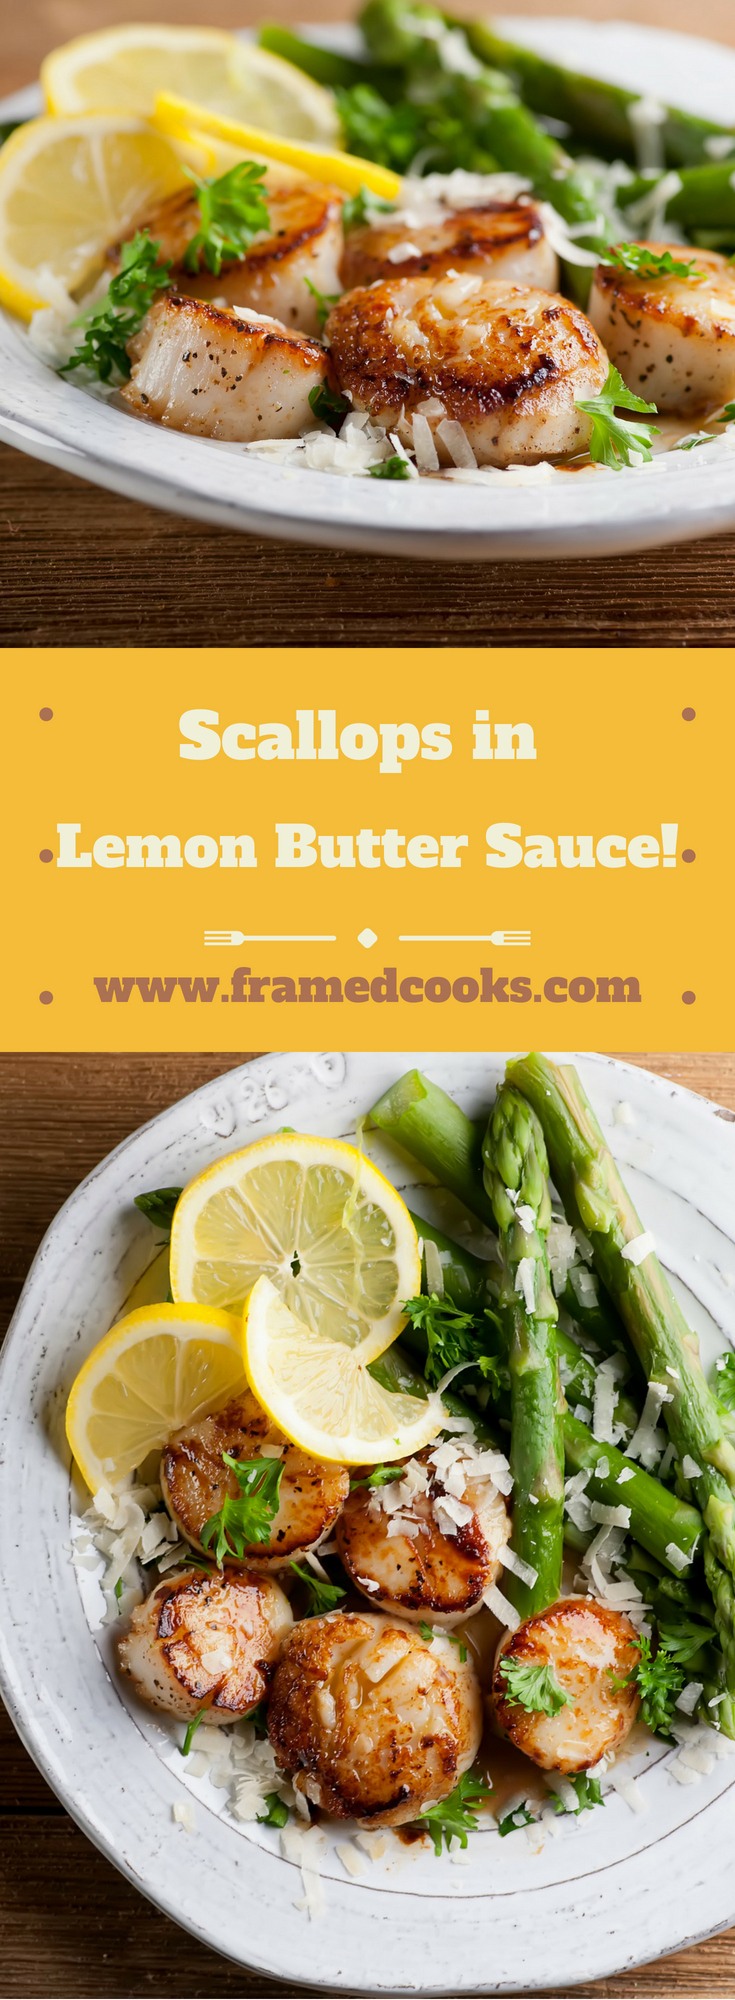 Scallops in Lemon Butter Sauce - Framed Cooks